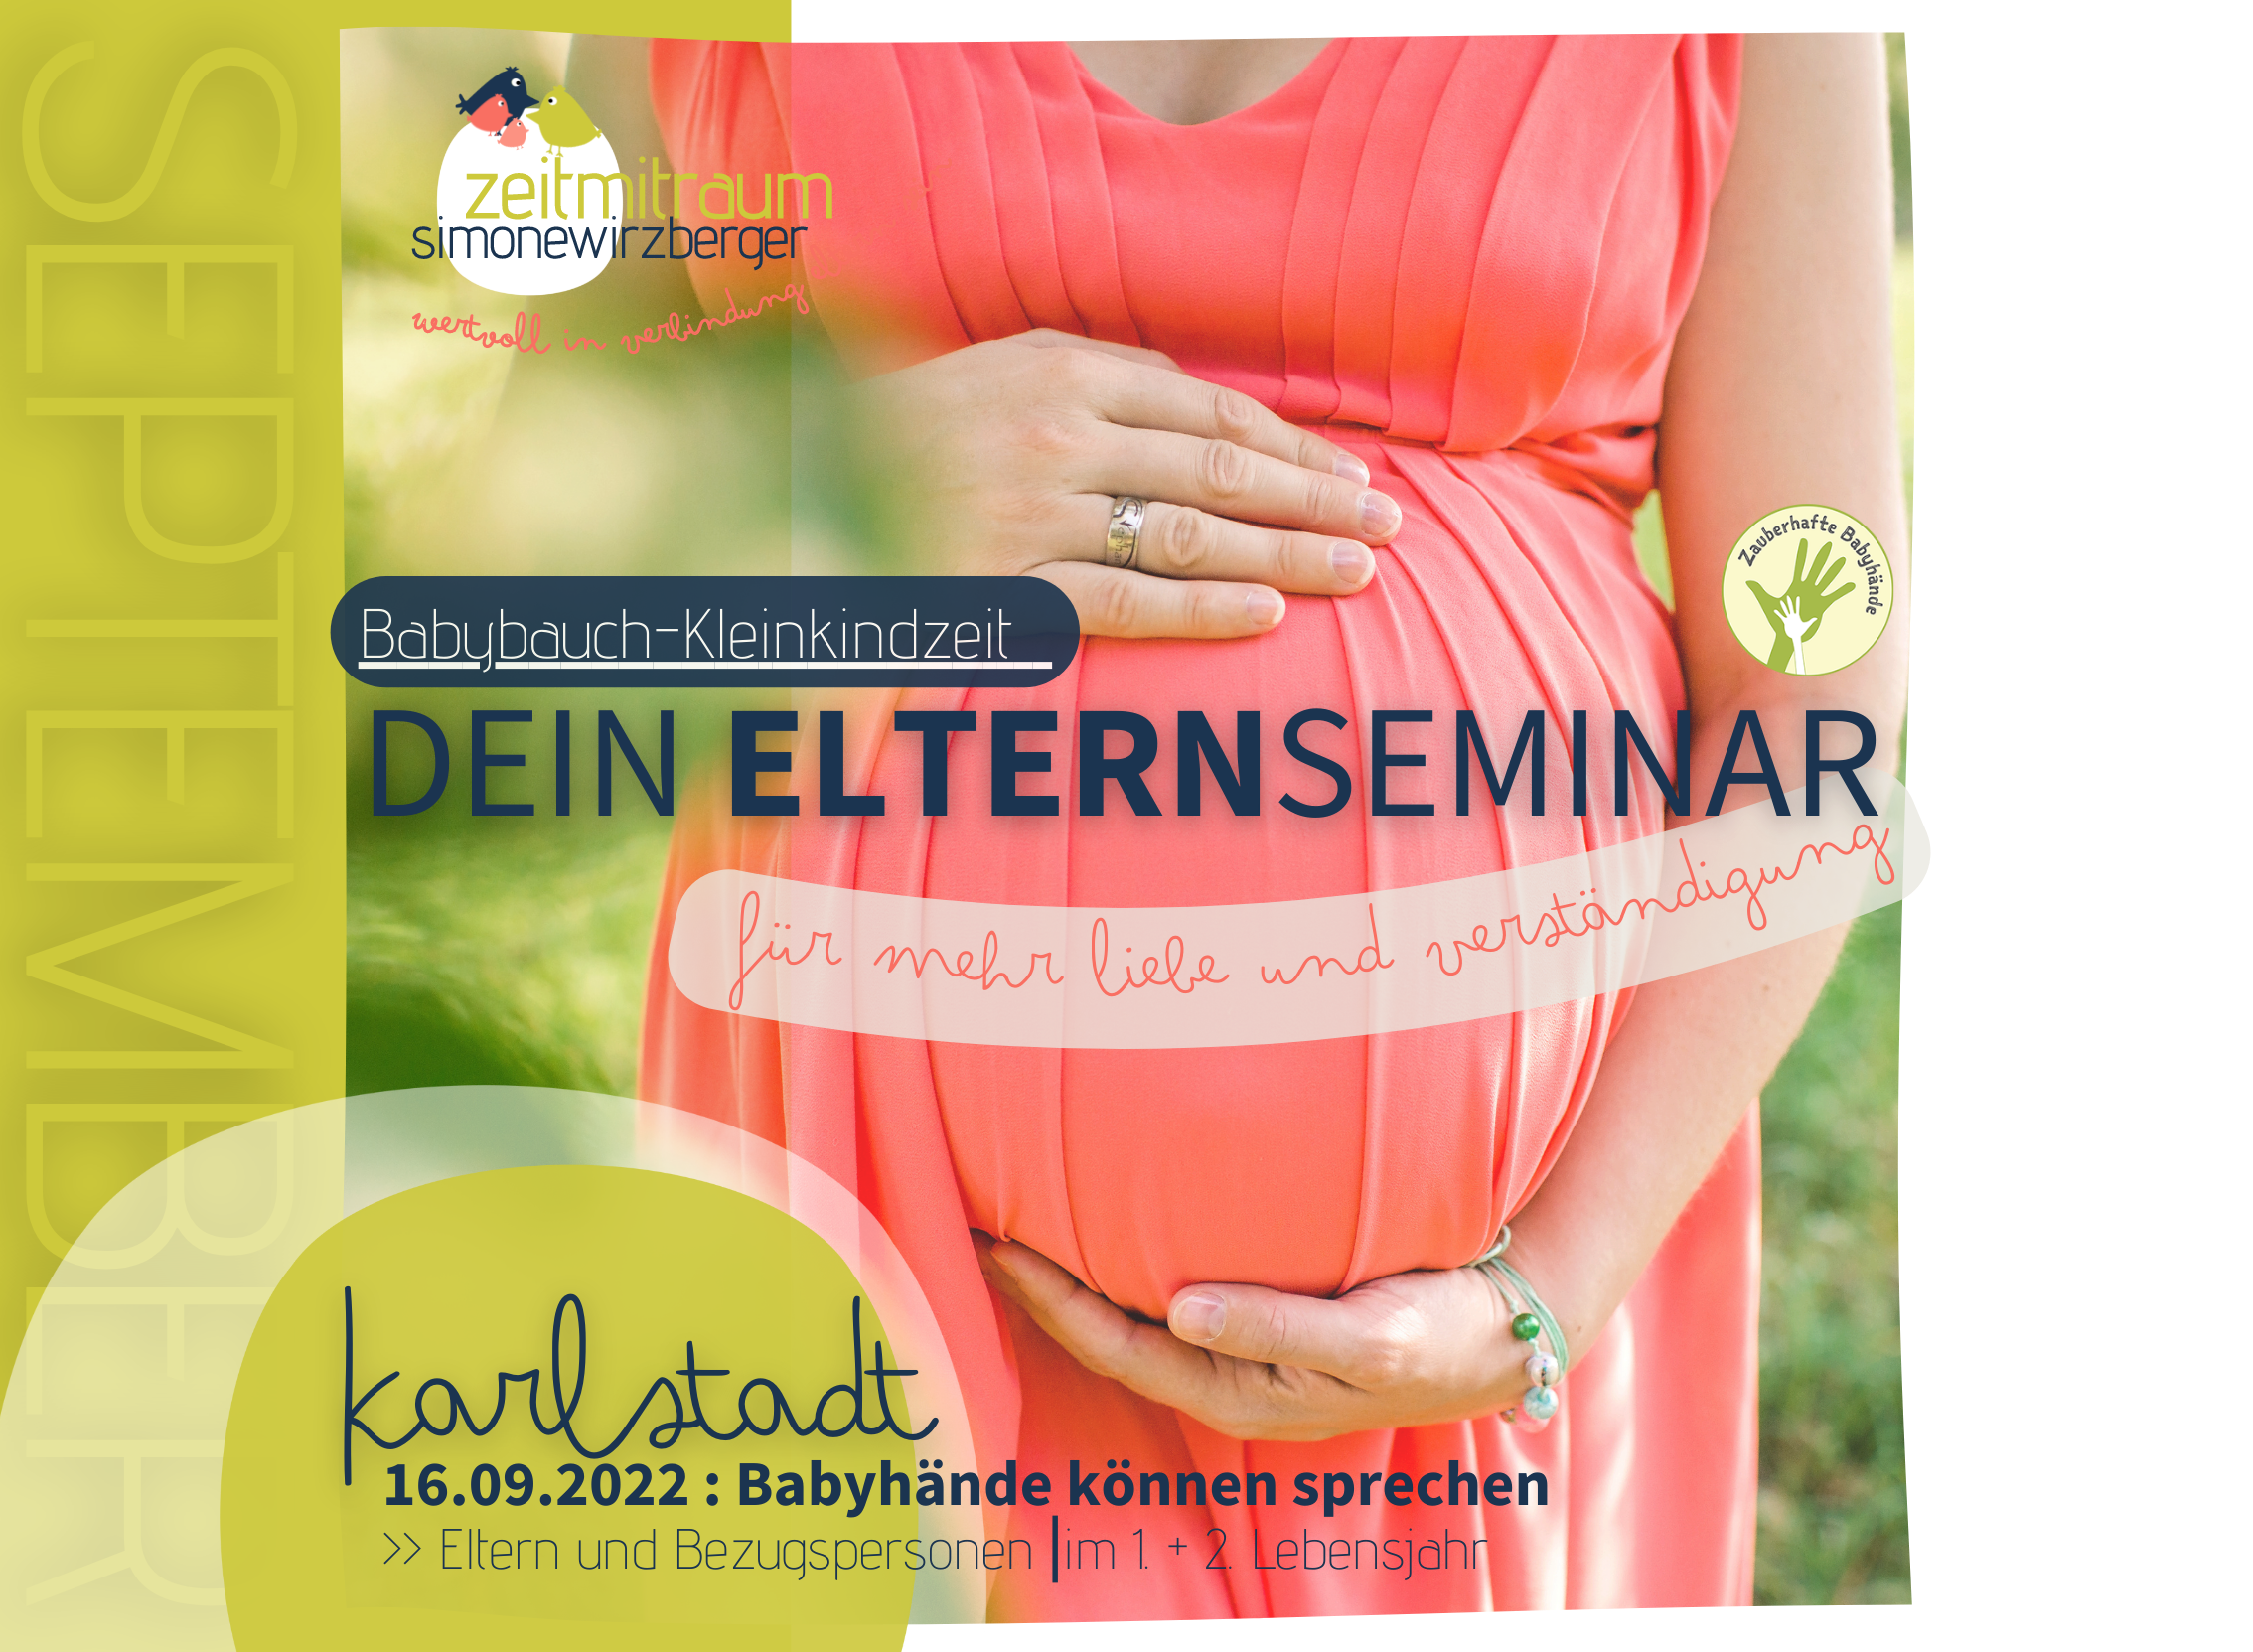 DEIN ELTERNSEMINAR  im September – Babyzeichen – Karlstadt [0-2 Jahre]